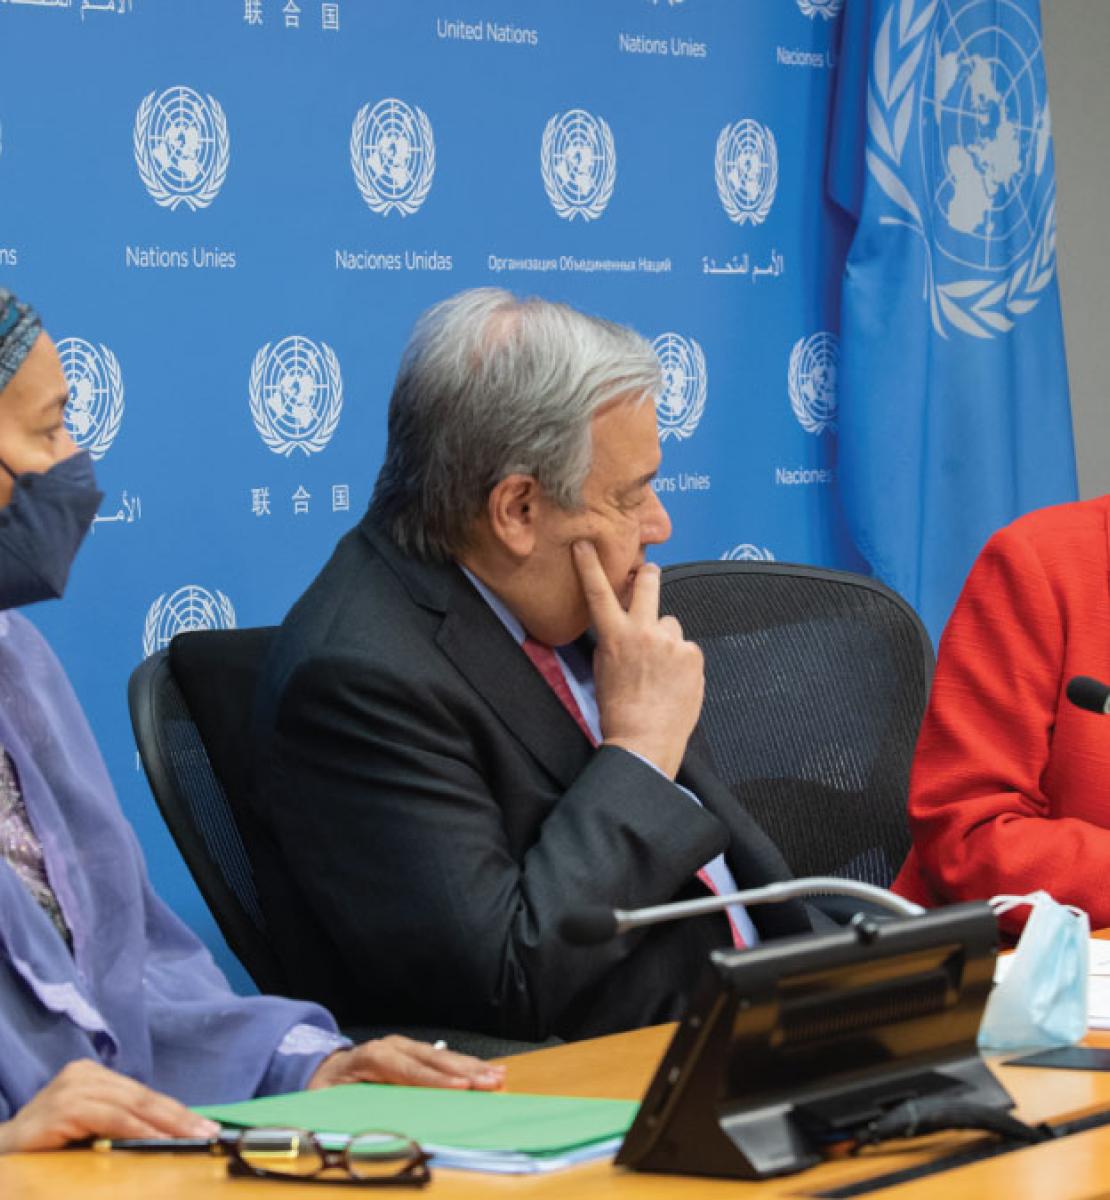 Un homme, le Secrétaire général de l'ONU, est assis entre deux femmes, dont la Vice-Secrétaire générale de l'ONU, lors d'une discussion animée. En arrière-plan est installée une grande bannière bleue où figurent plusieurs logos identiques de l'ONU.